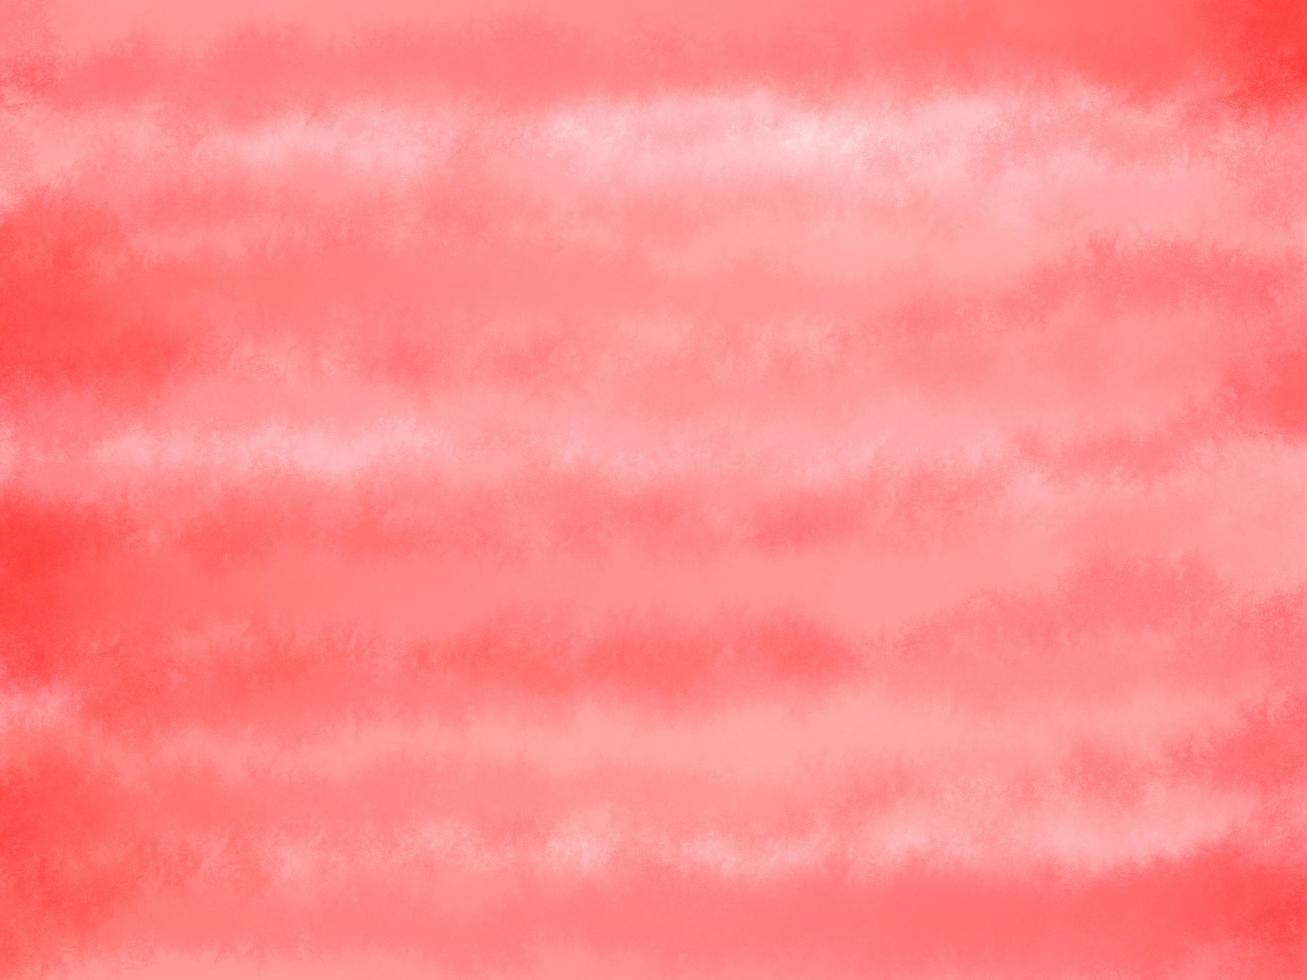 colore rosso dell'acqua timbrato diffuso su sfondo bianco dal computer di programma, grafica astratta con texture ruvida. arti contemporanee, tela di carta artistica monotona, spazio per cornice copia scrivere cartolina foto